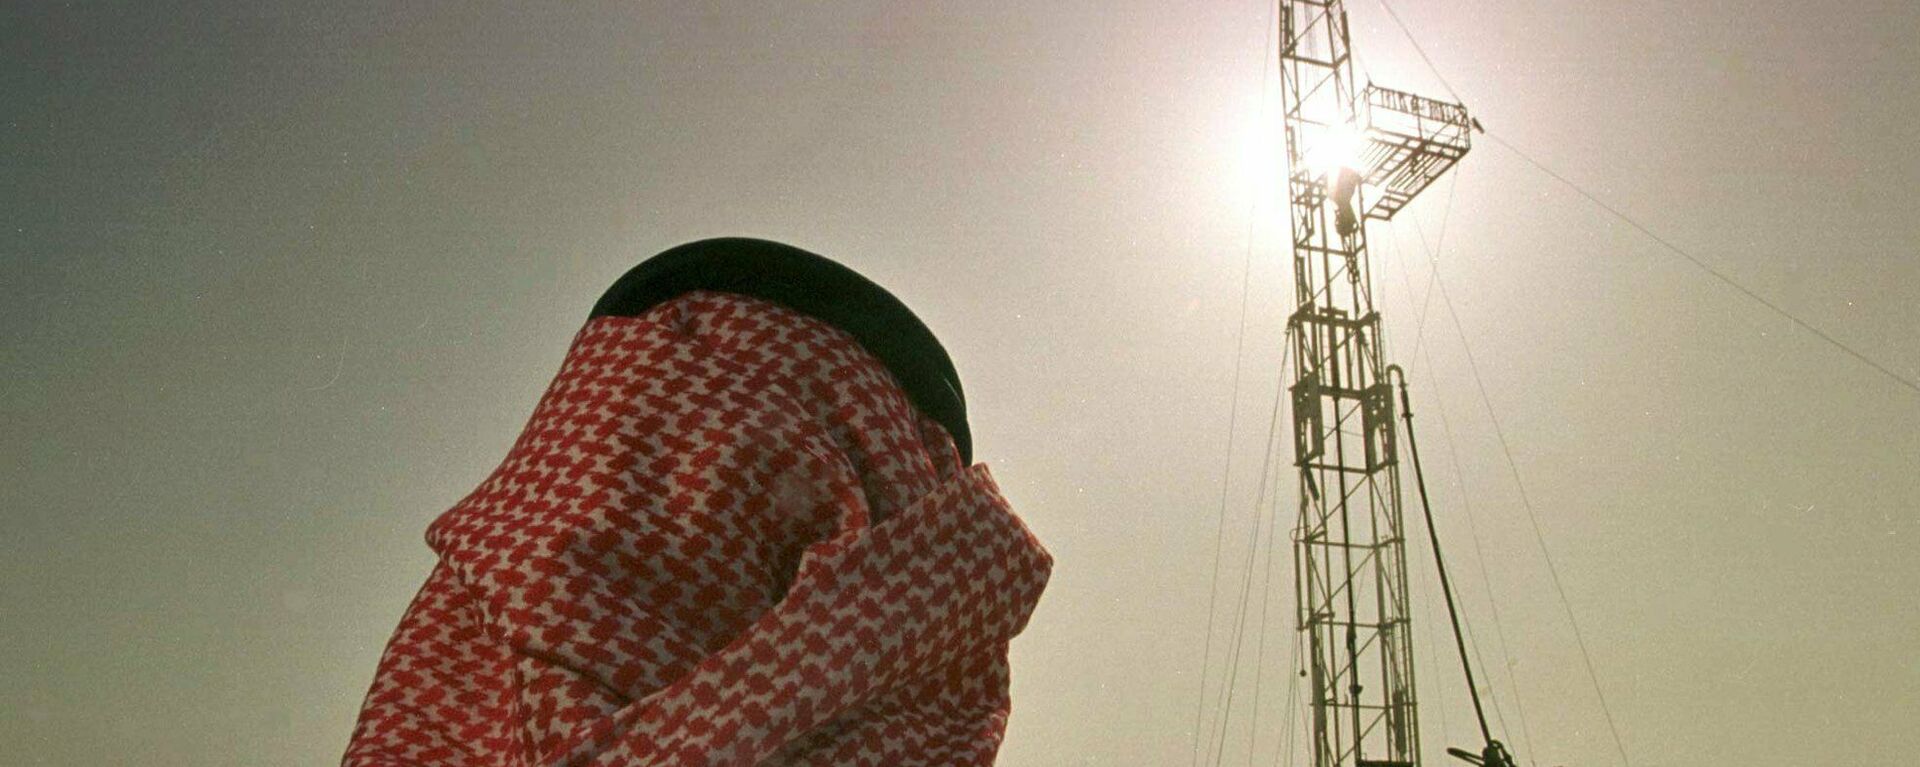 Un empleado de la compañía petrolera saudí Aramco observa el progreso de una plataforma situada en un yacimiento petrolero  - Sputnik Mundo, 1920, 31.10.2021